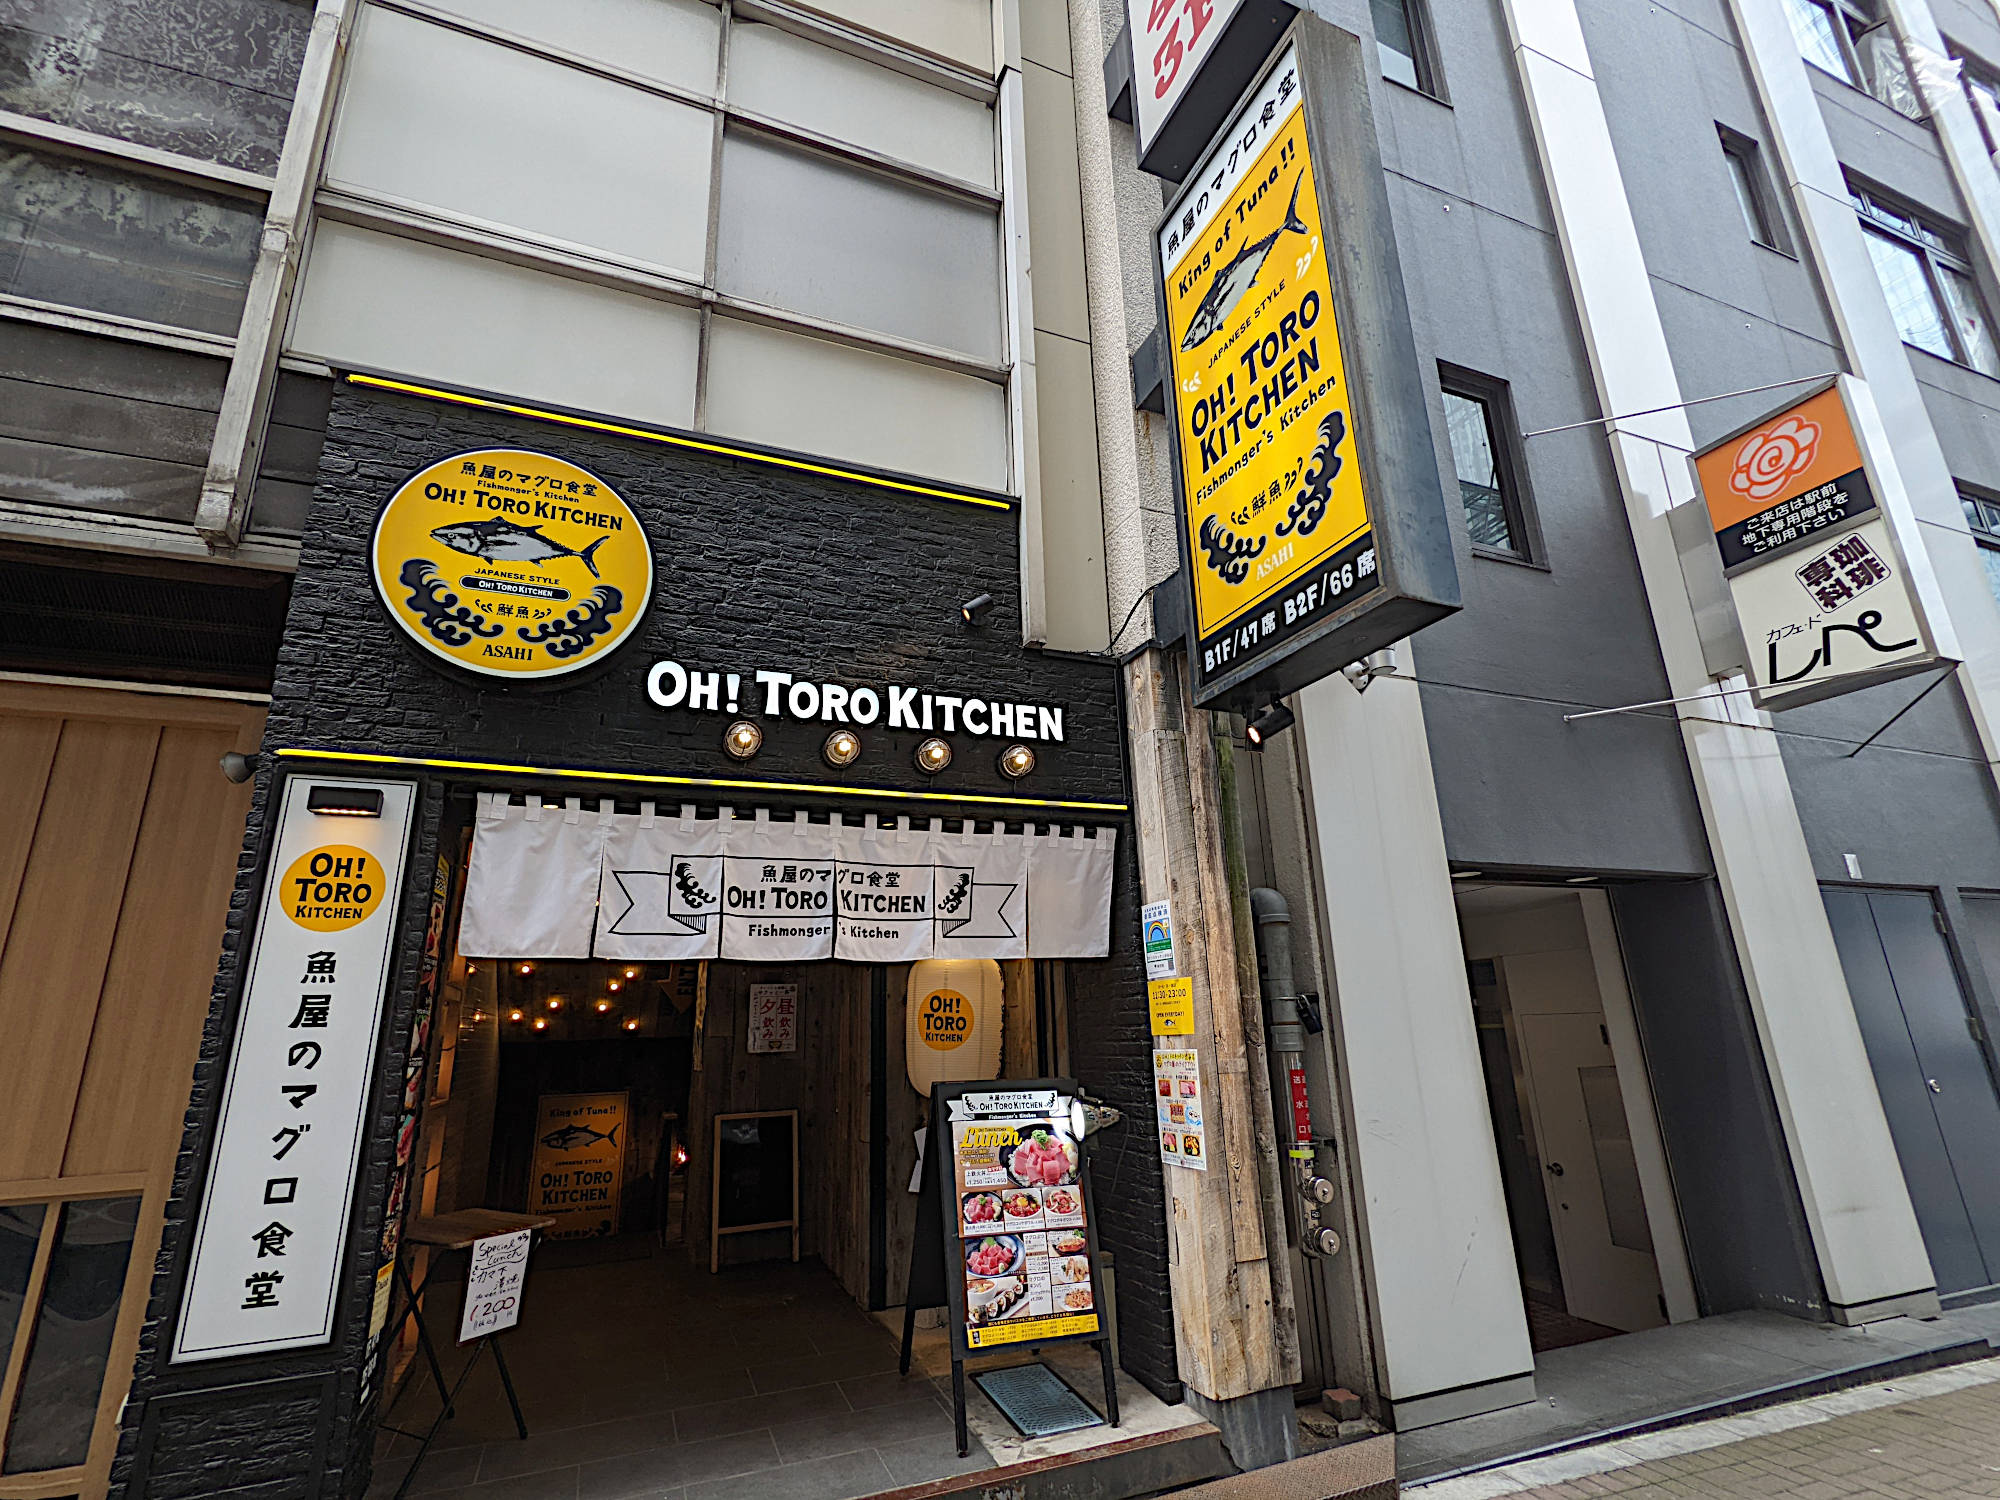 「魚屋のマグロ食堂 オートロキッチン 渋谷店」の外観